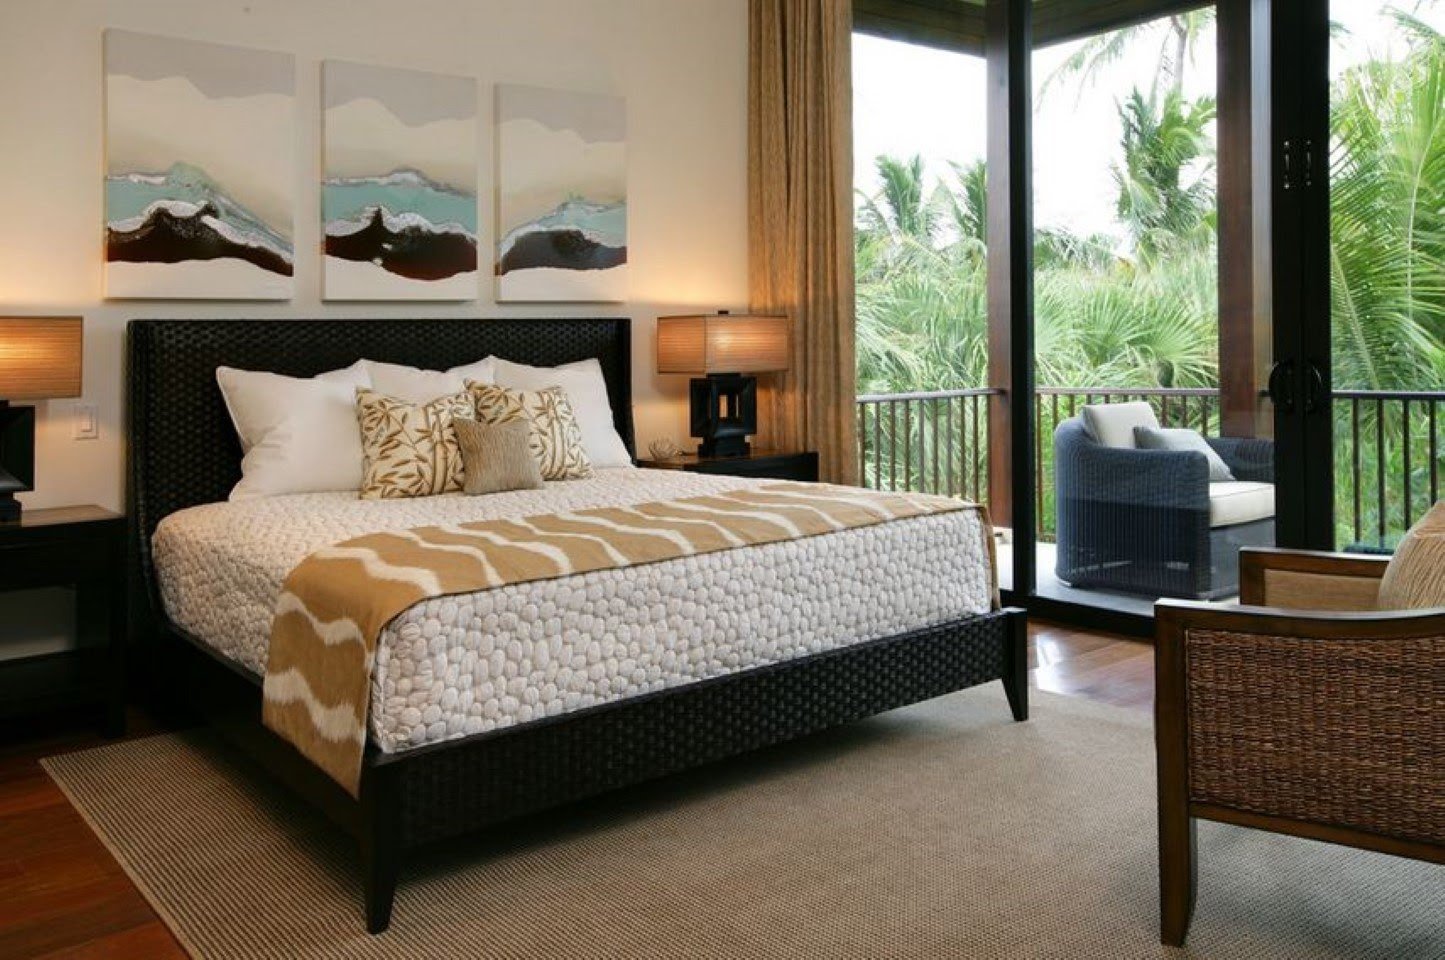 Кровать в спальню: фото, дизайн, виды, материалы, цвета, формы, стили, декор